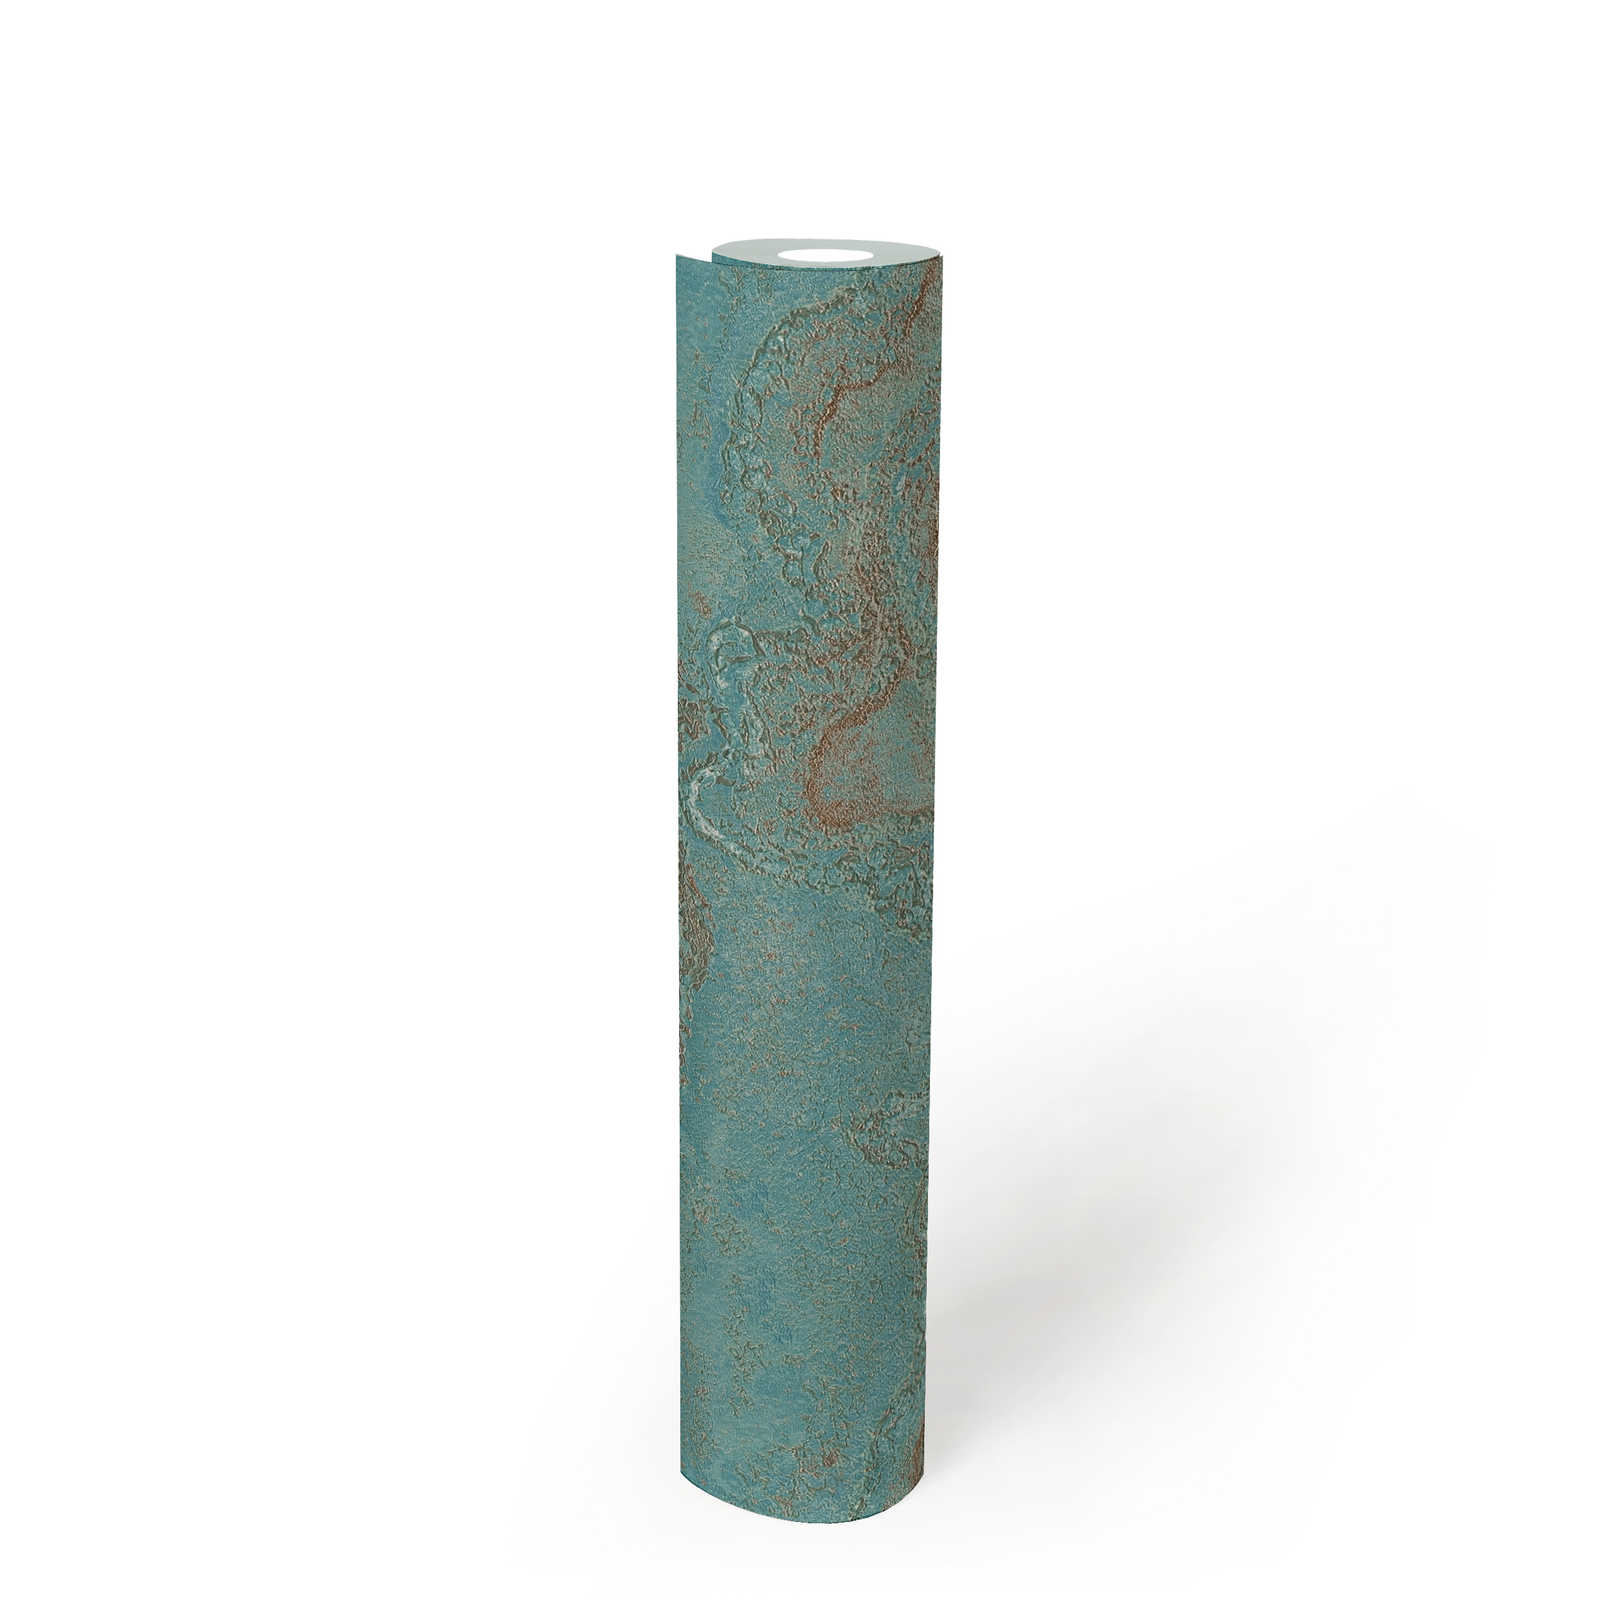             Papel pintado tejido-no tejido jaspeado con efecto metálico - azul, turquesa, dorado
        